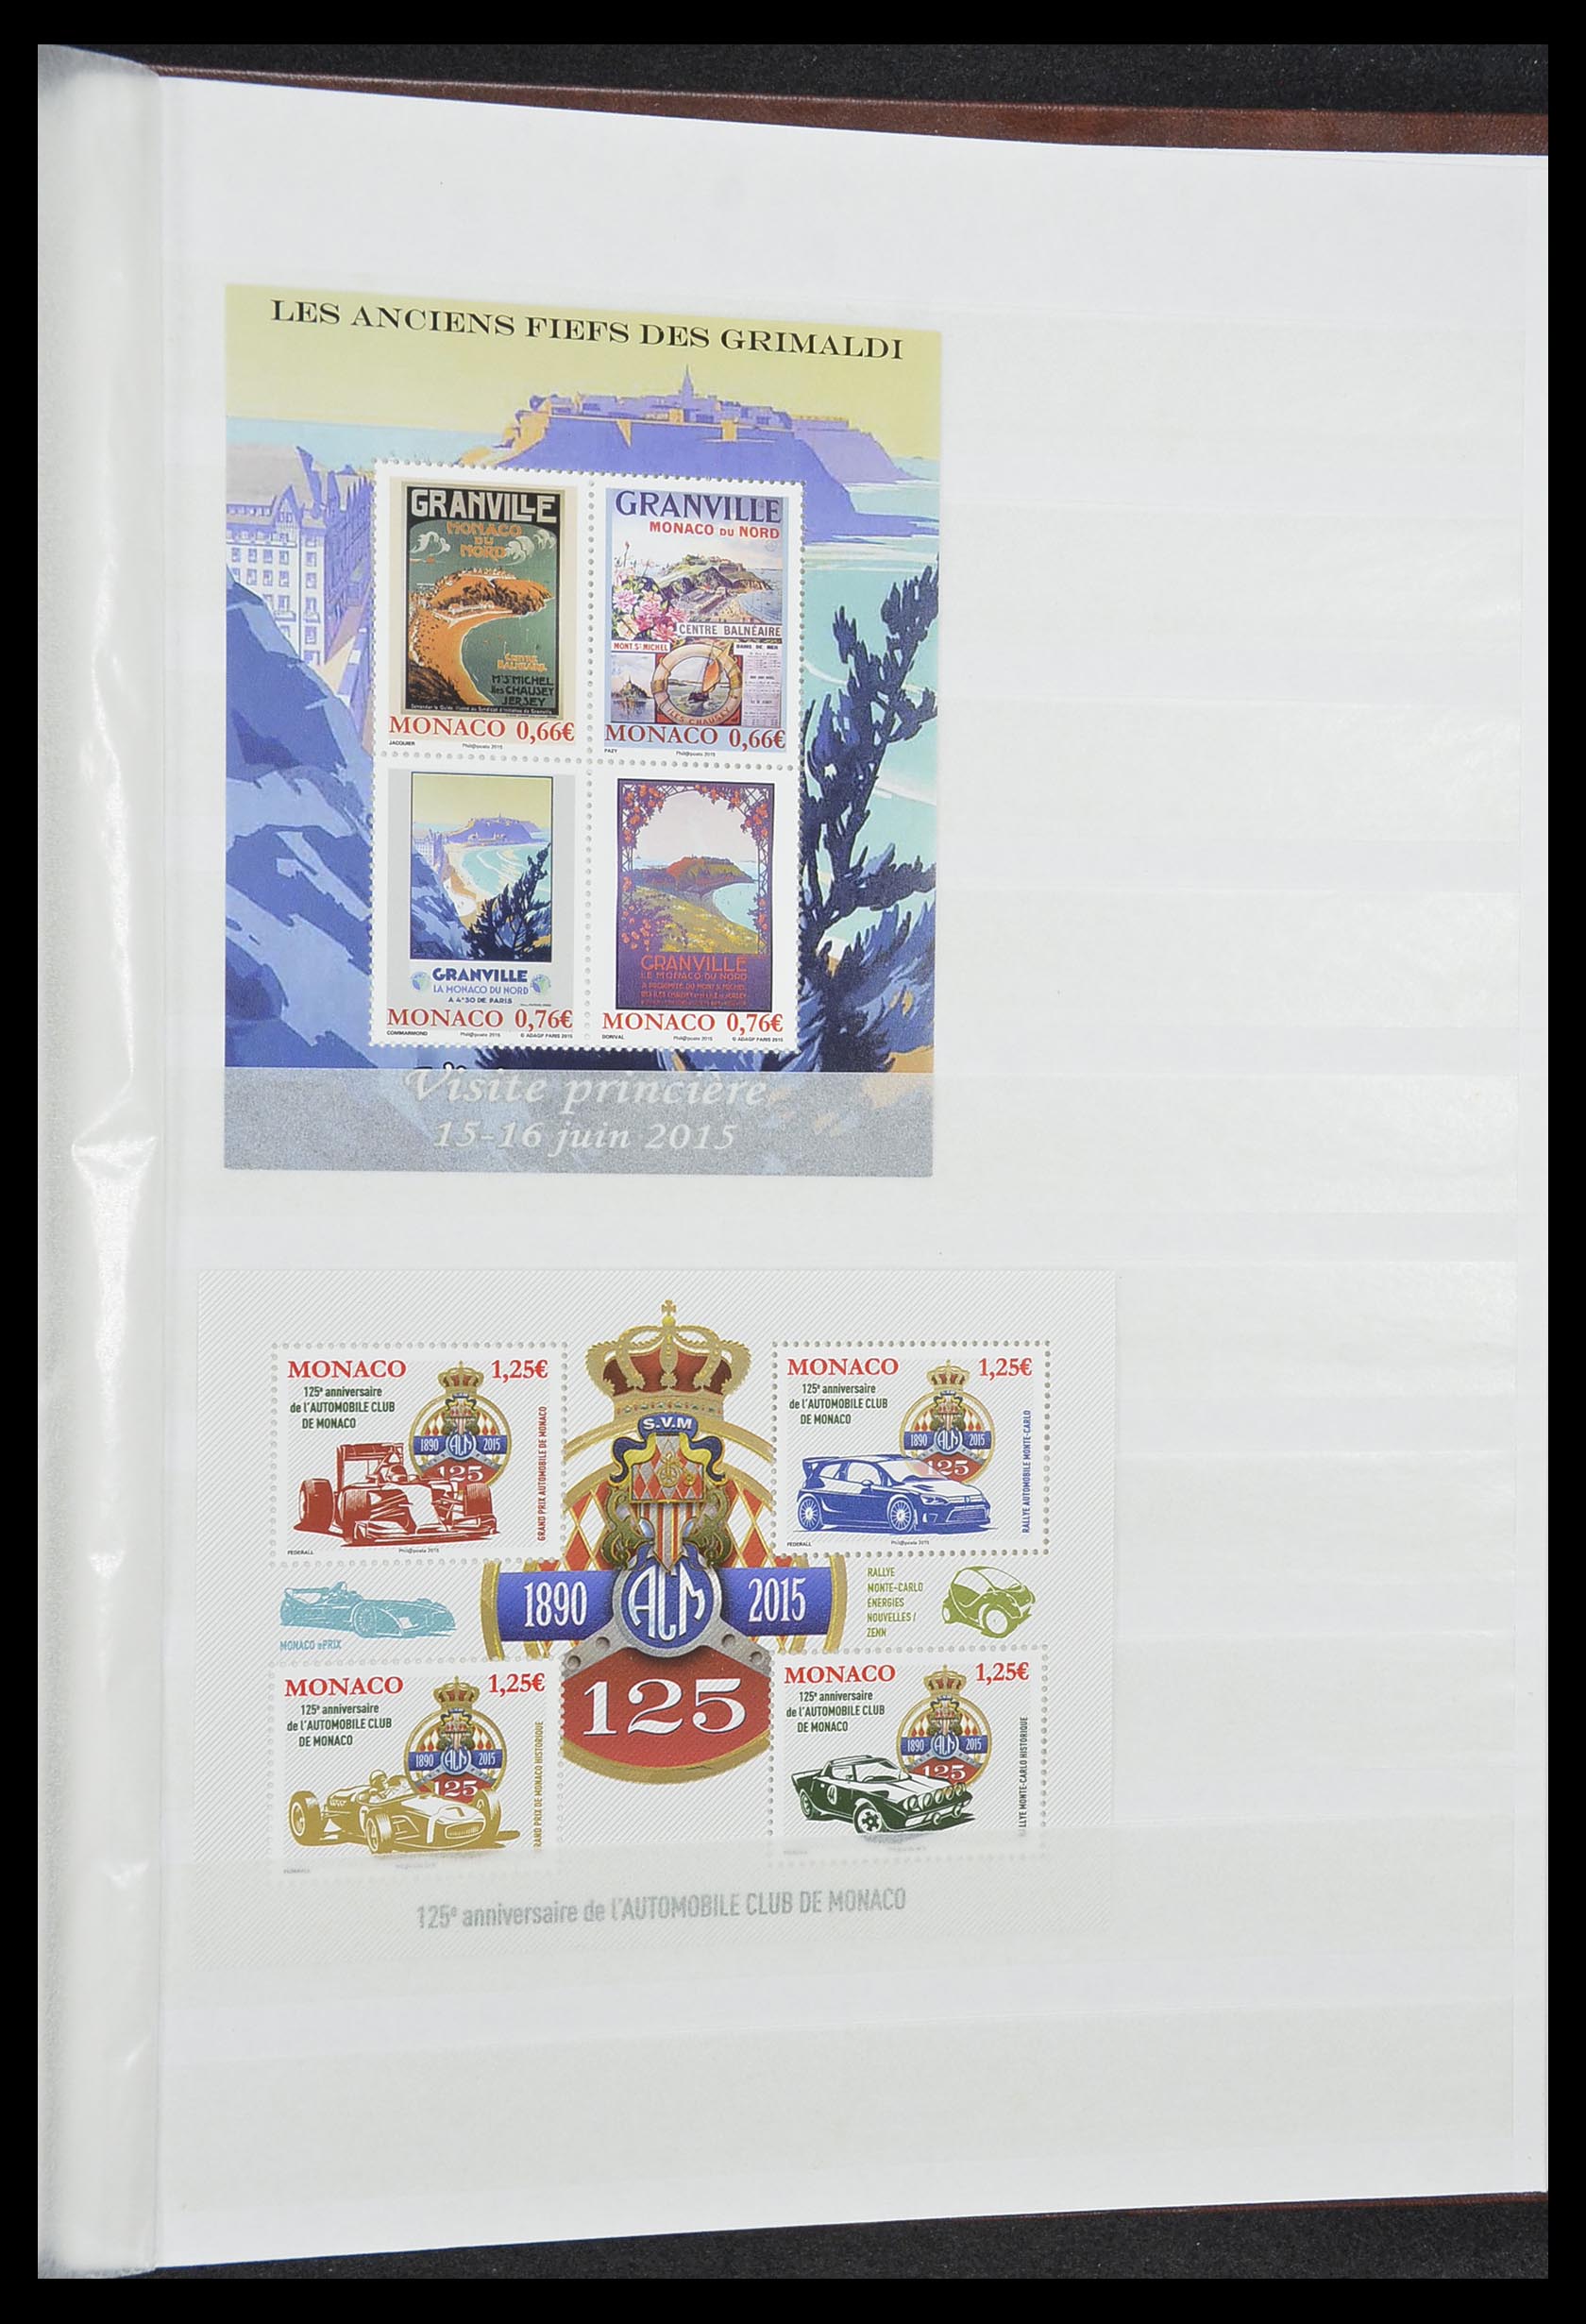 33833 057 - Stamp collection 33833 Monaco souvenir sheets 1979-2015.